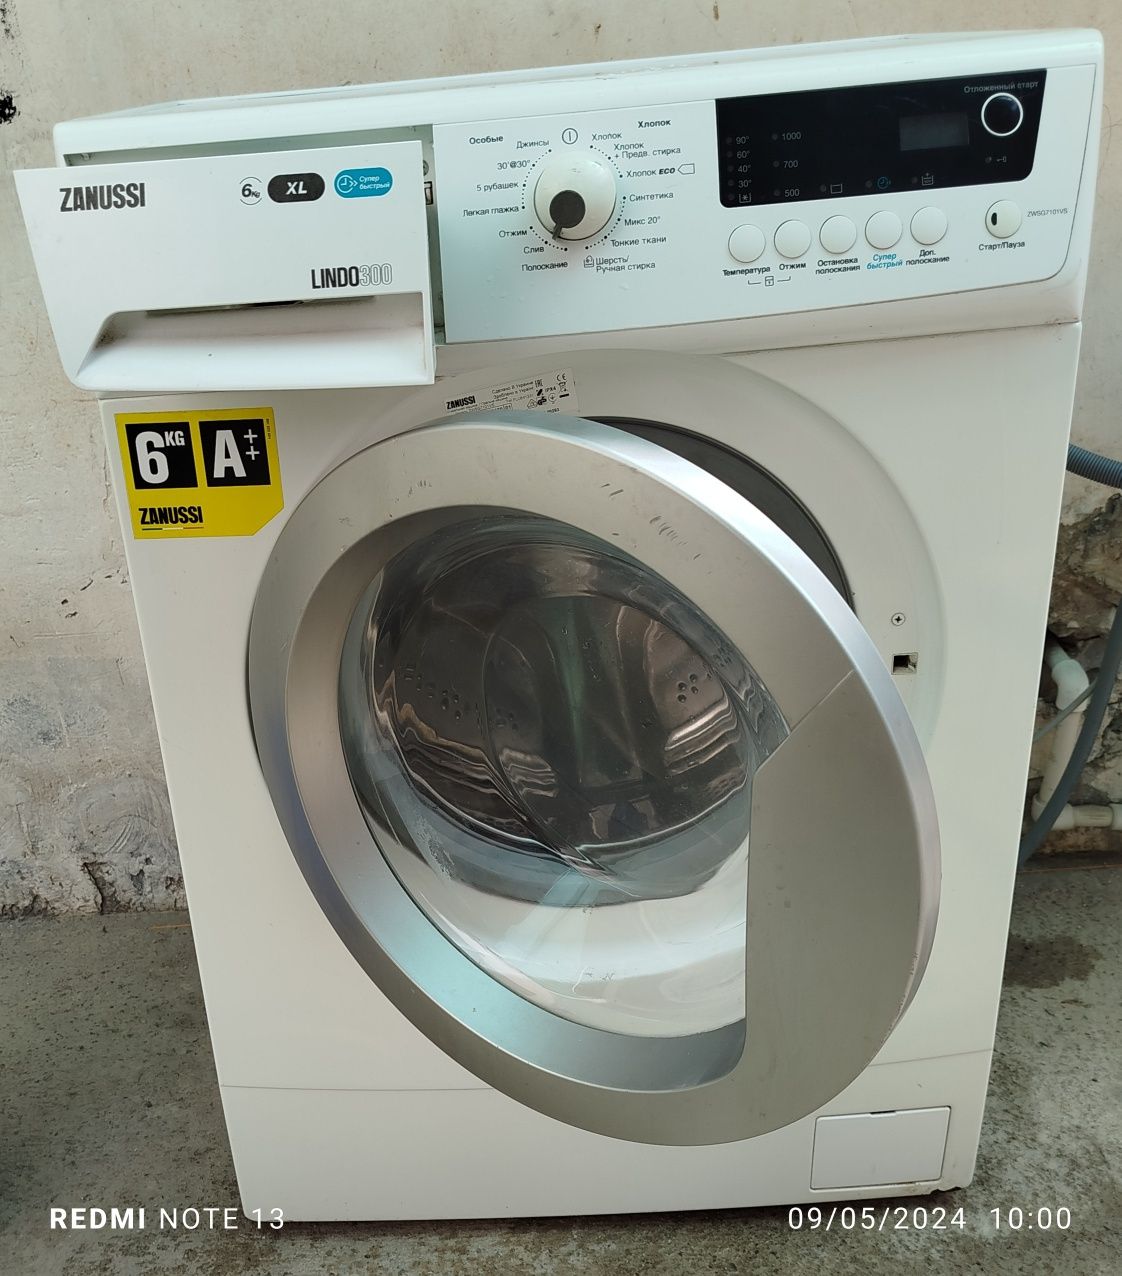 Срочно продам стиральную машину zanussi 6кг Работает отлично состояние